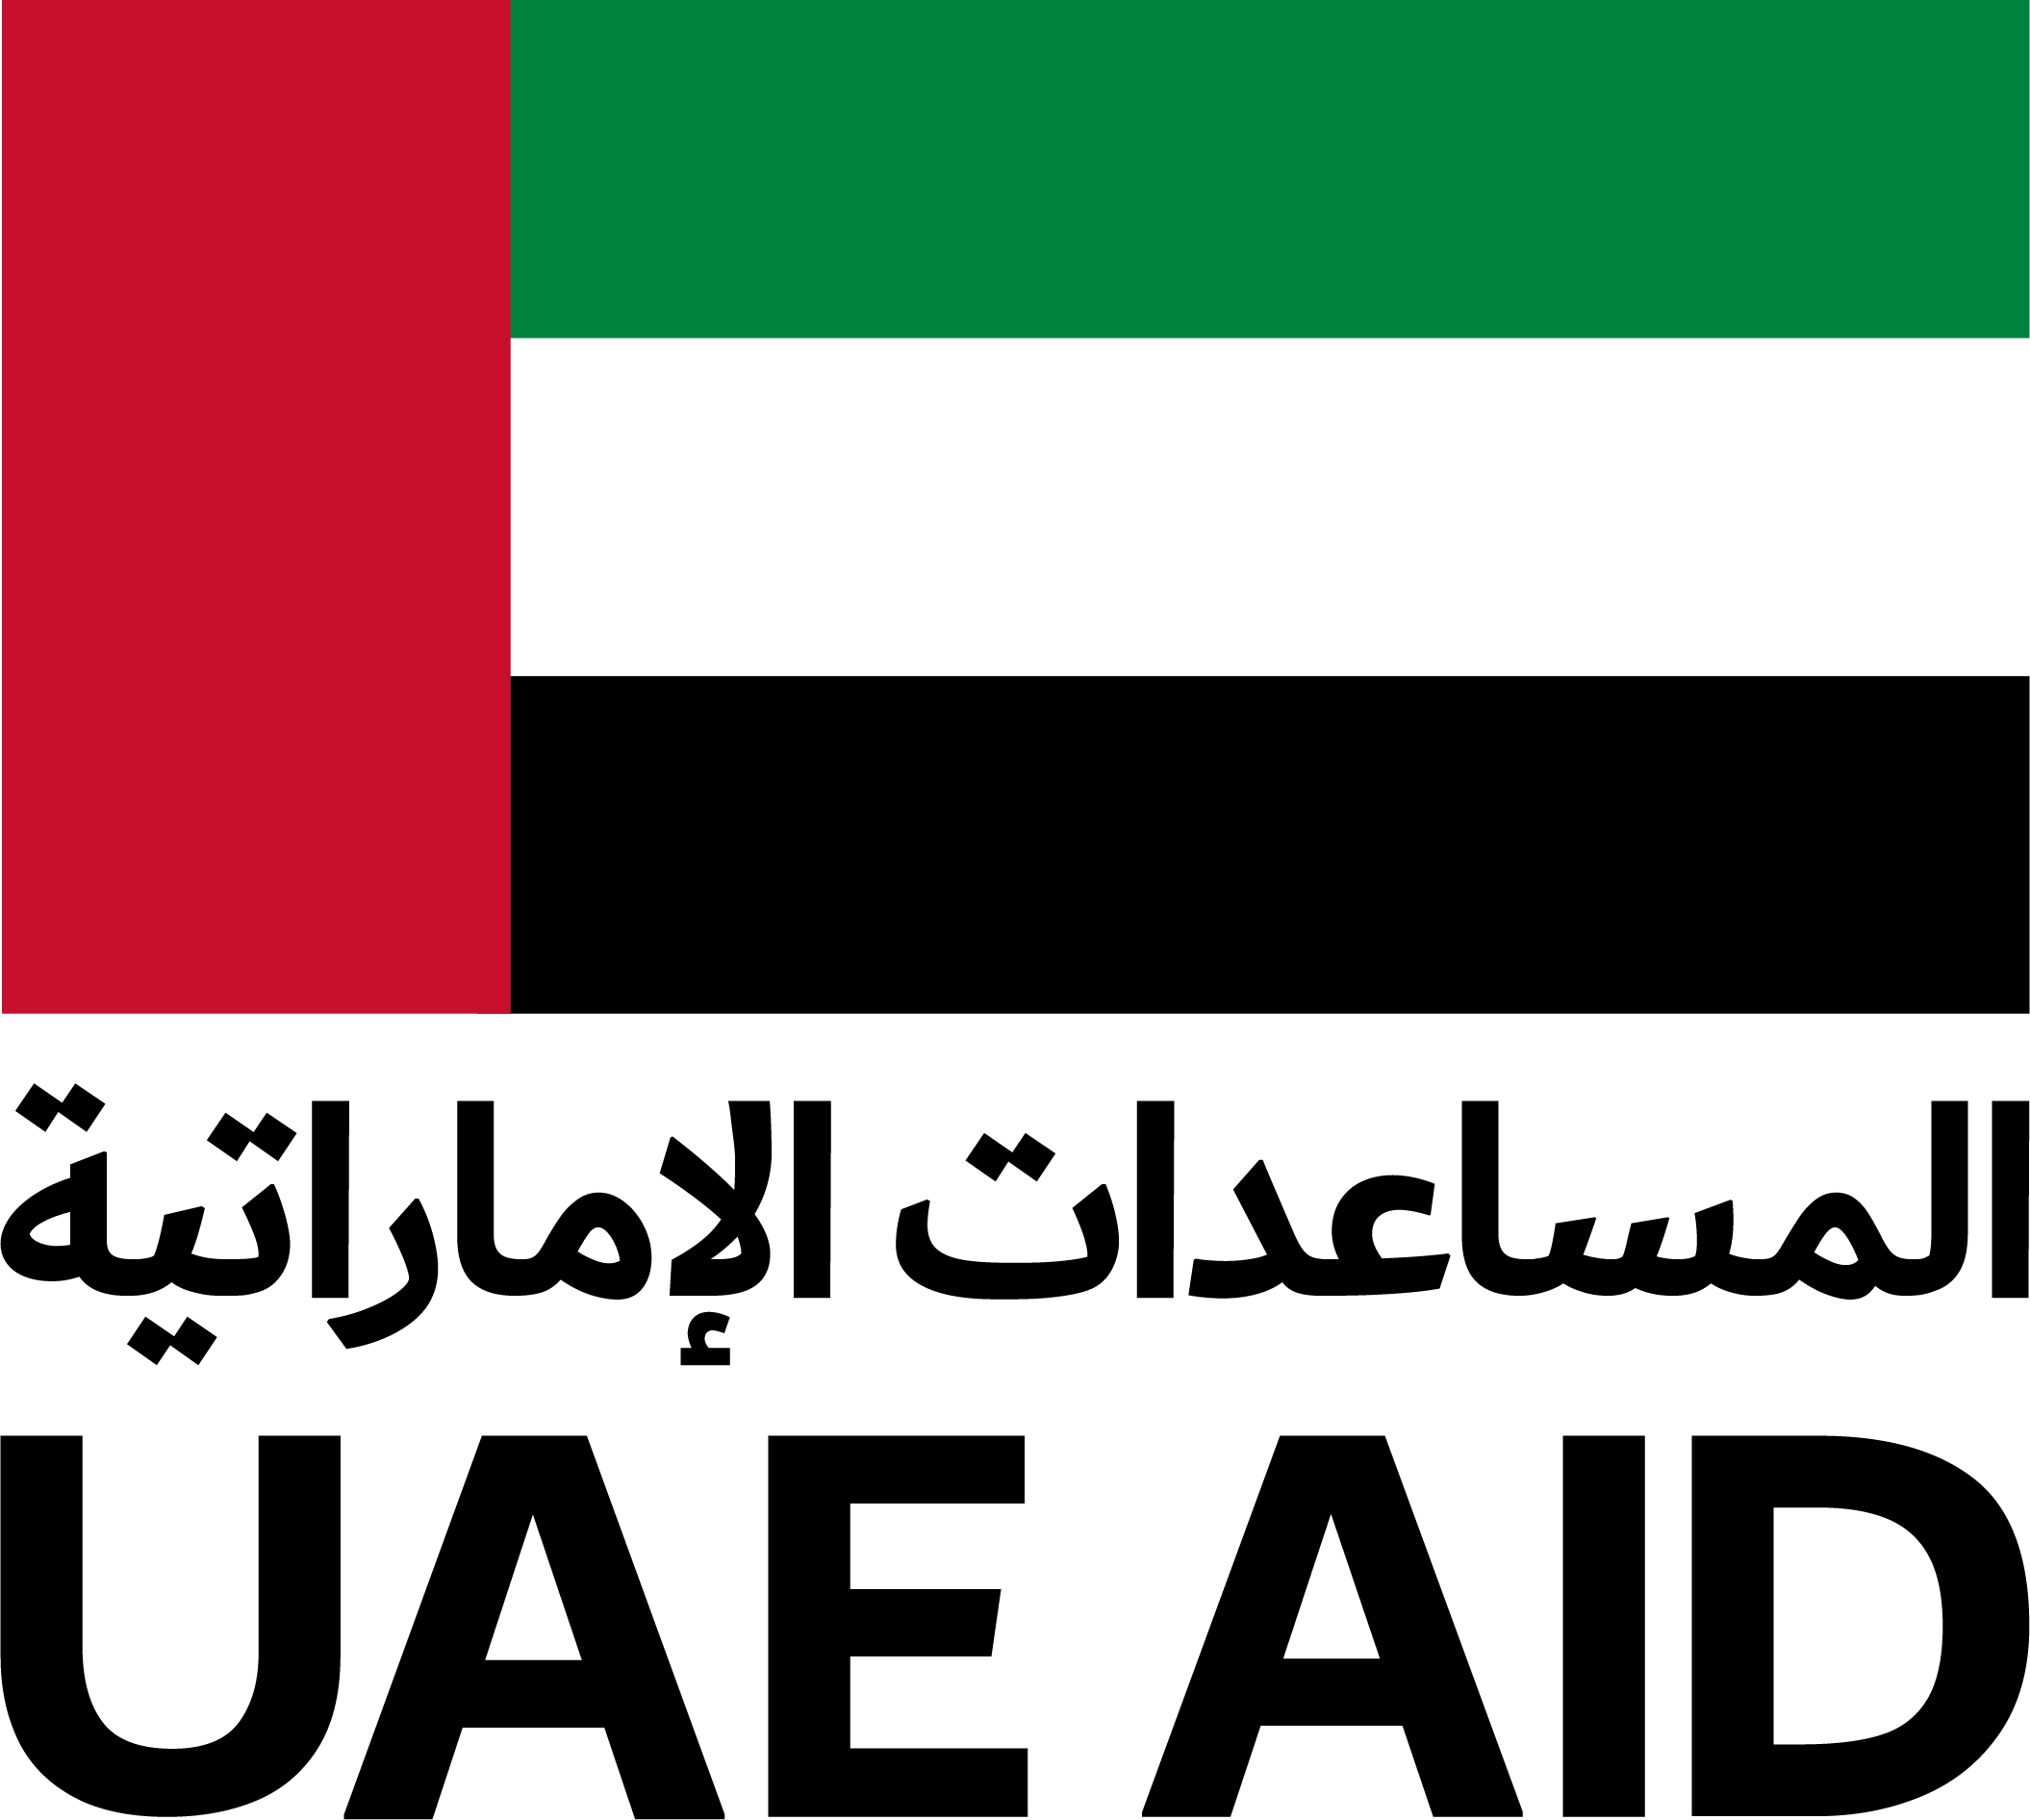 UAE AID